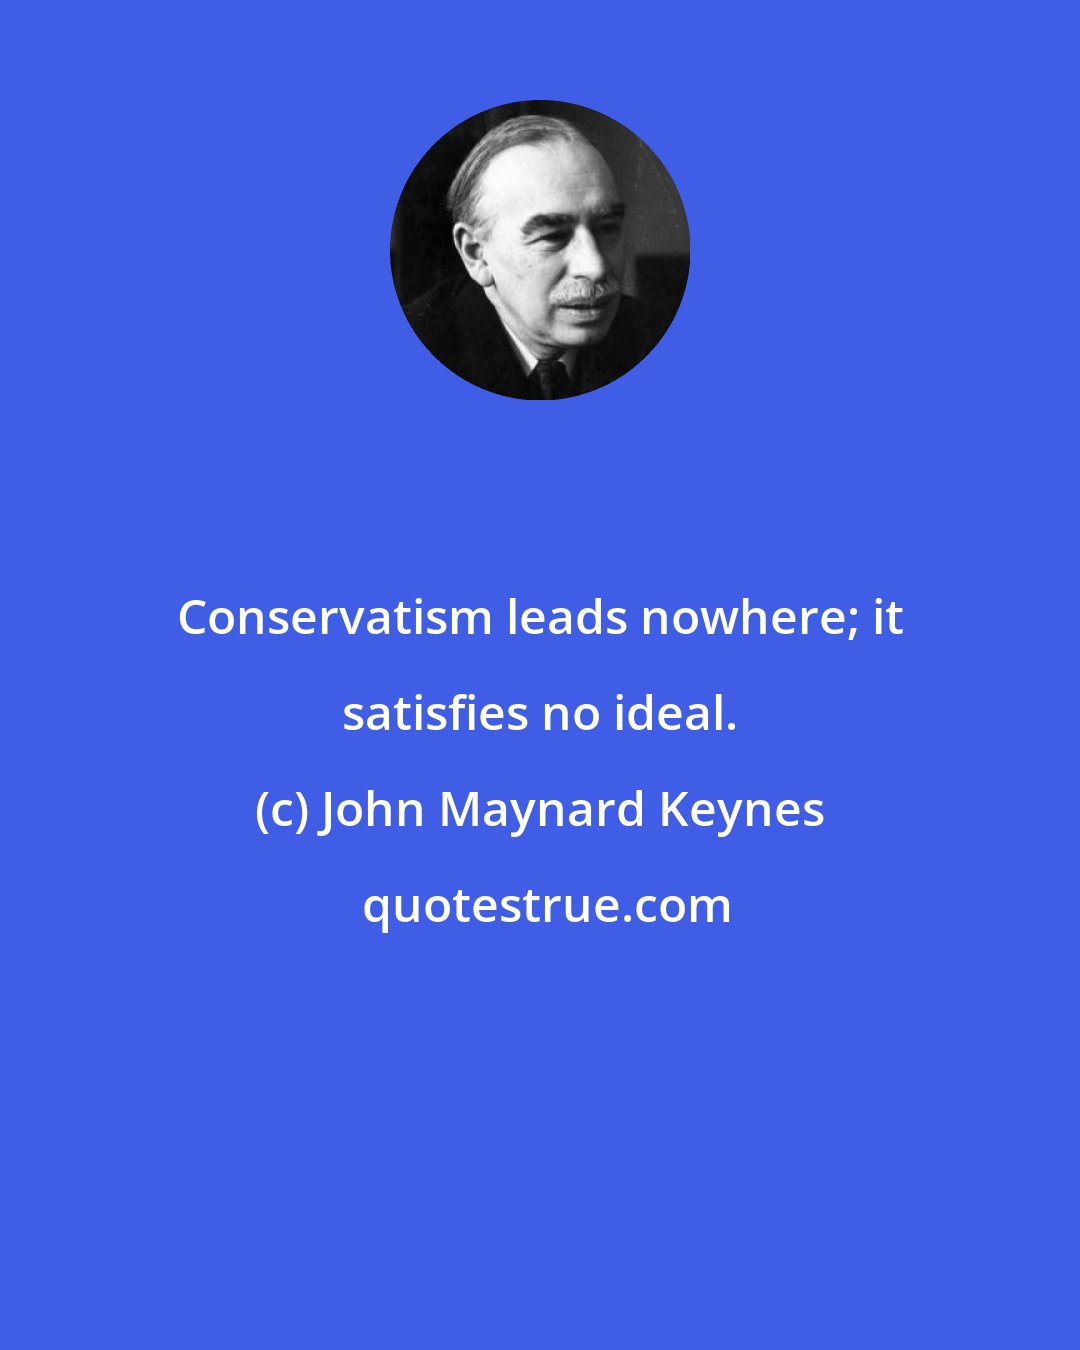 John Maynard Keynes: Conservatism leads nowhere; it satisfies no ideal.